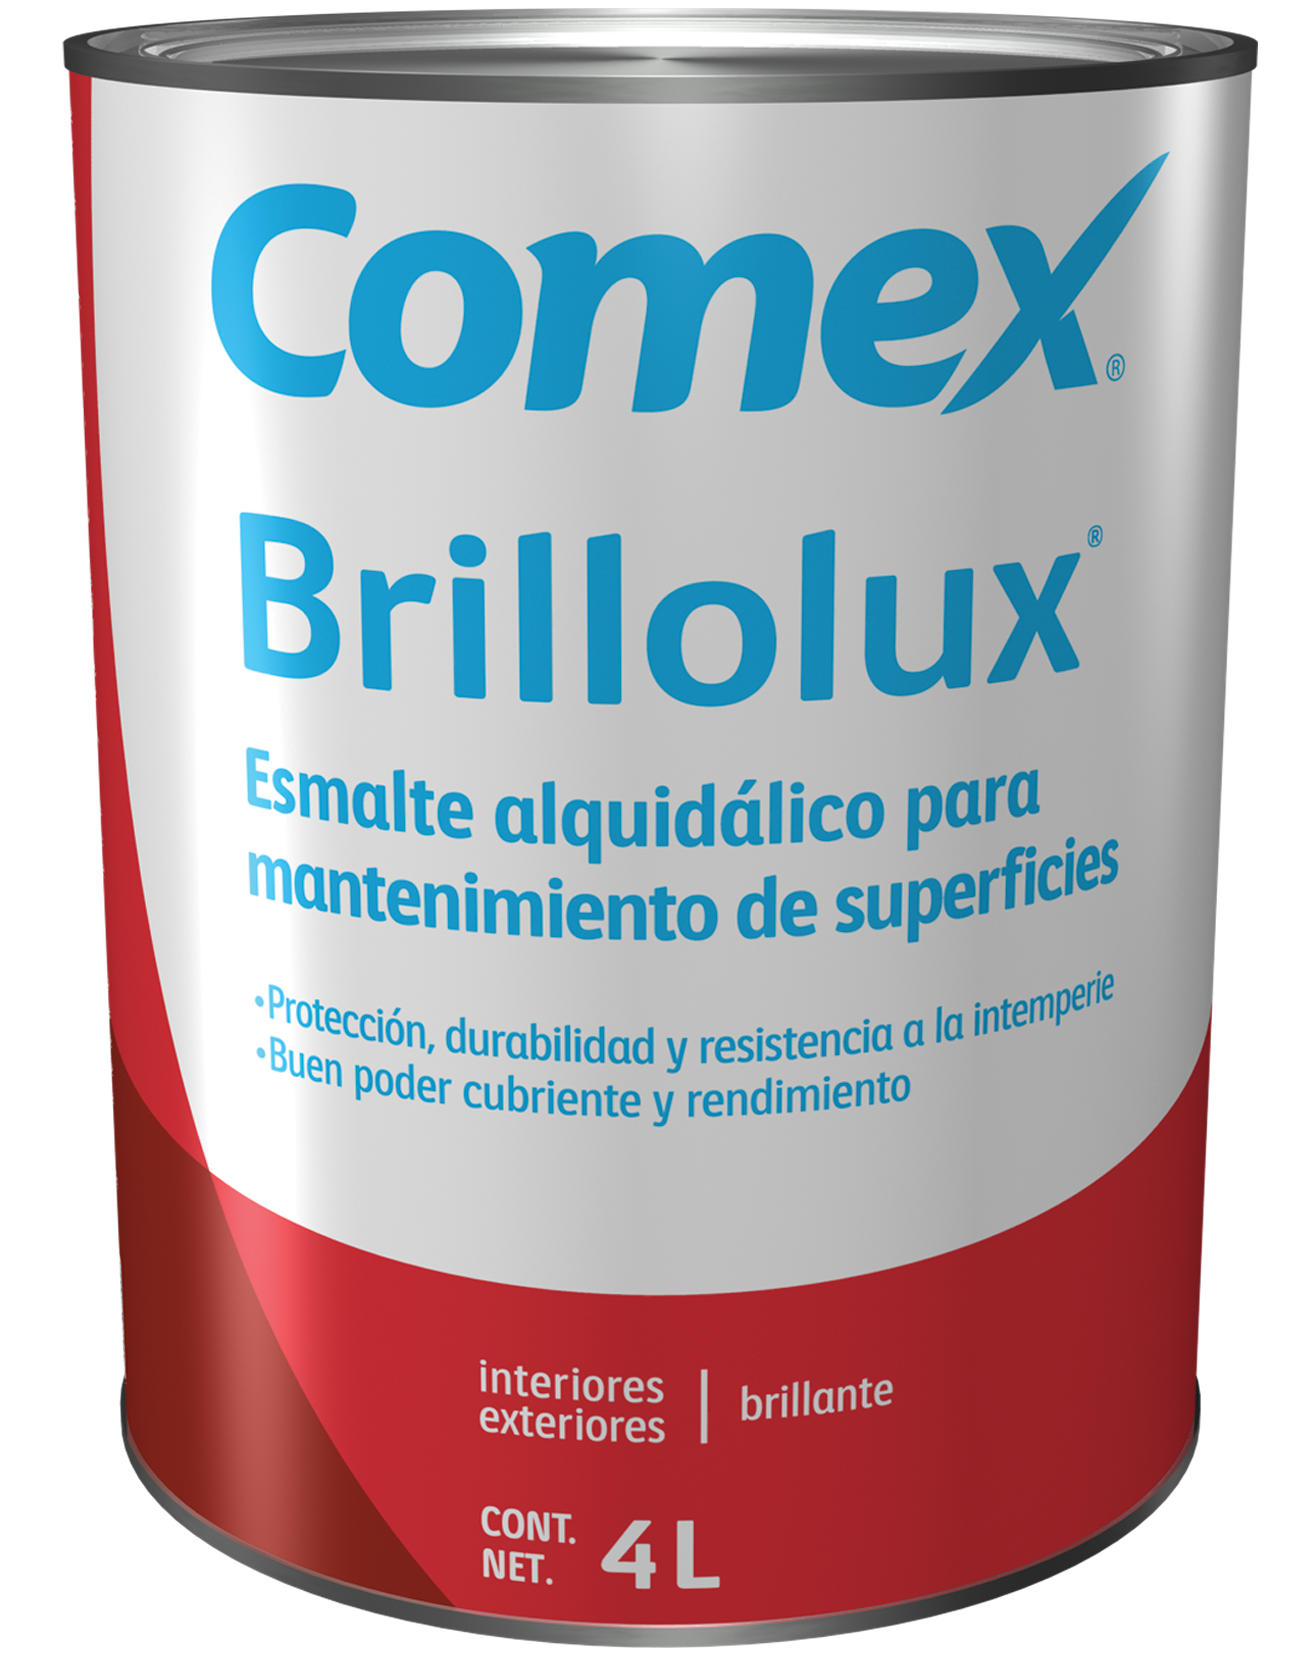 Esmalte Brillolux® | Comex | Pintacomex